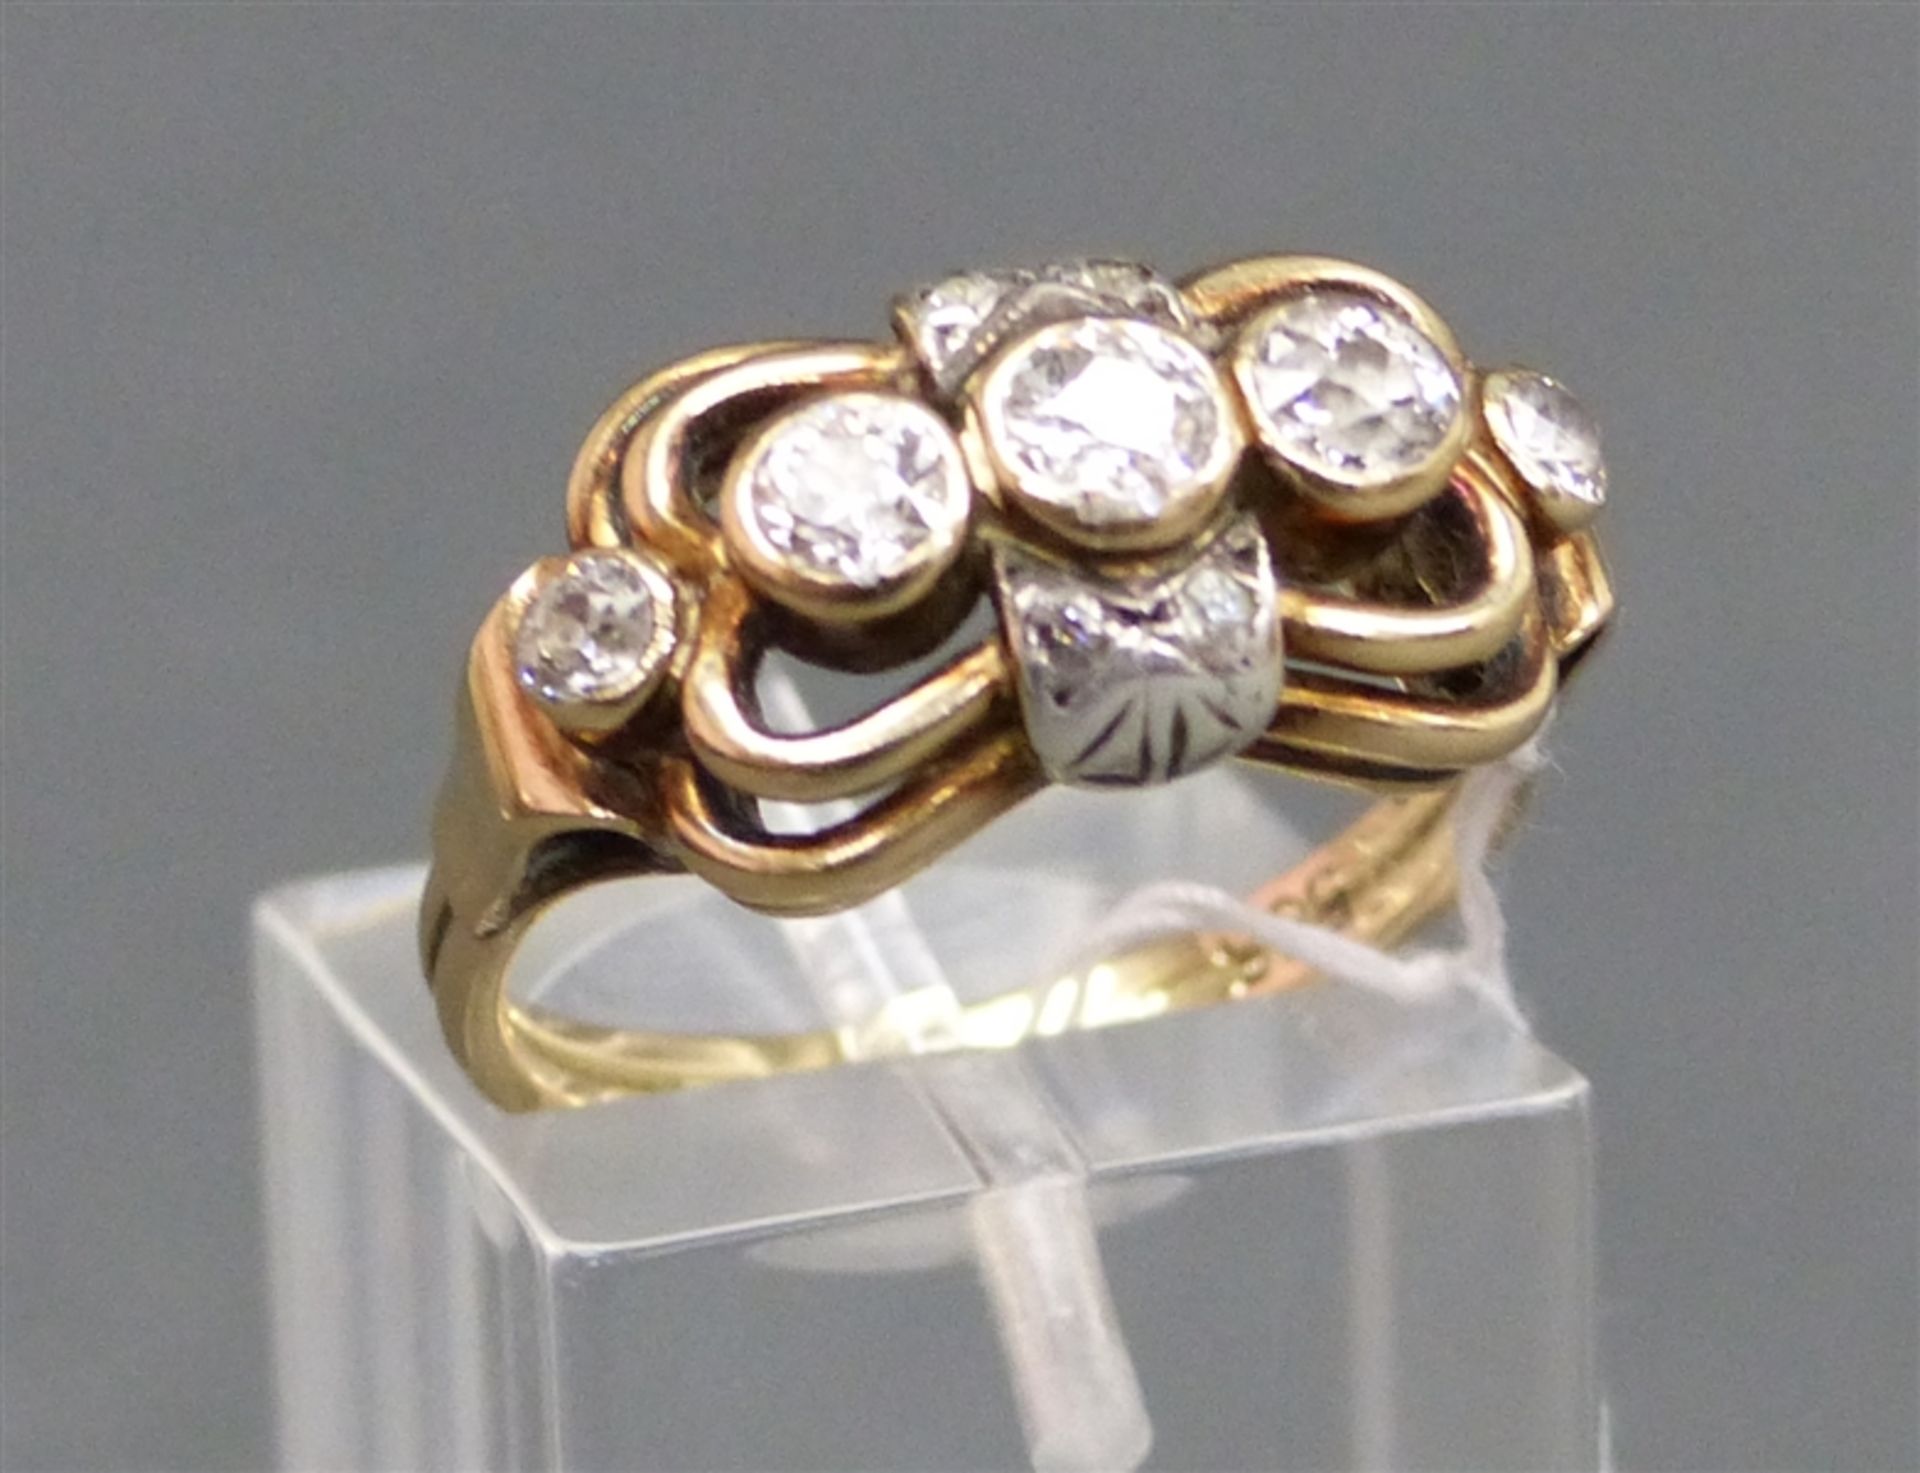 Damenring, um 1900 14 kt. Gelbgold, mit 5 Diamanten besetzt, zus. ca. 0,60 ct, durchbrochen